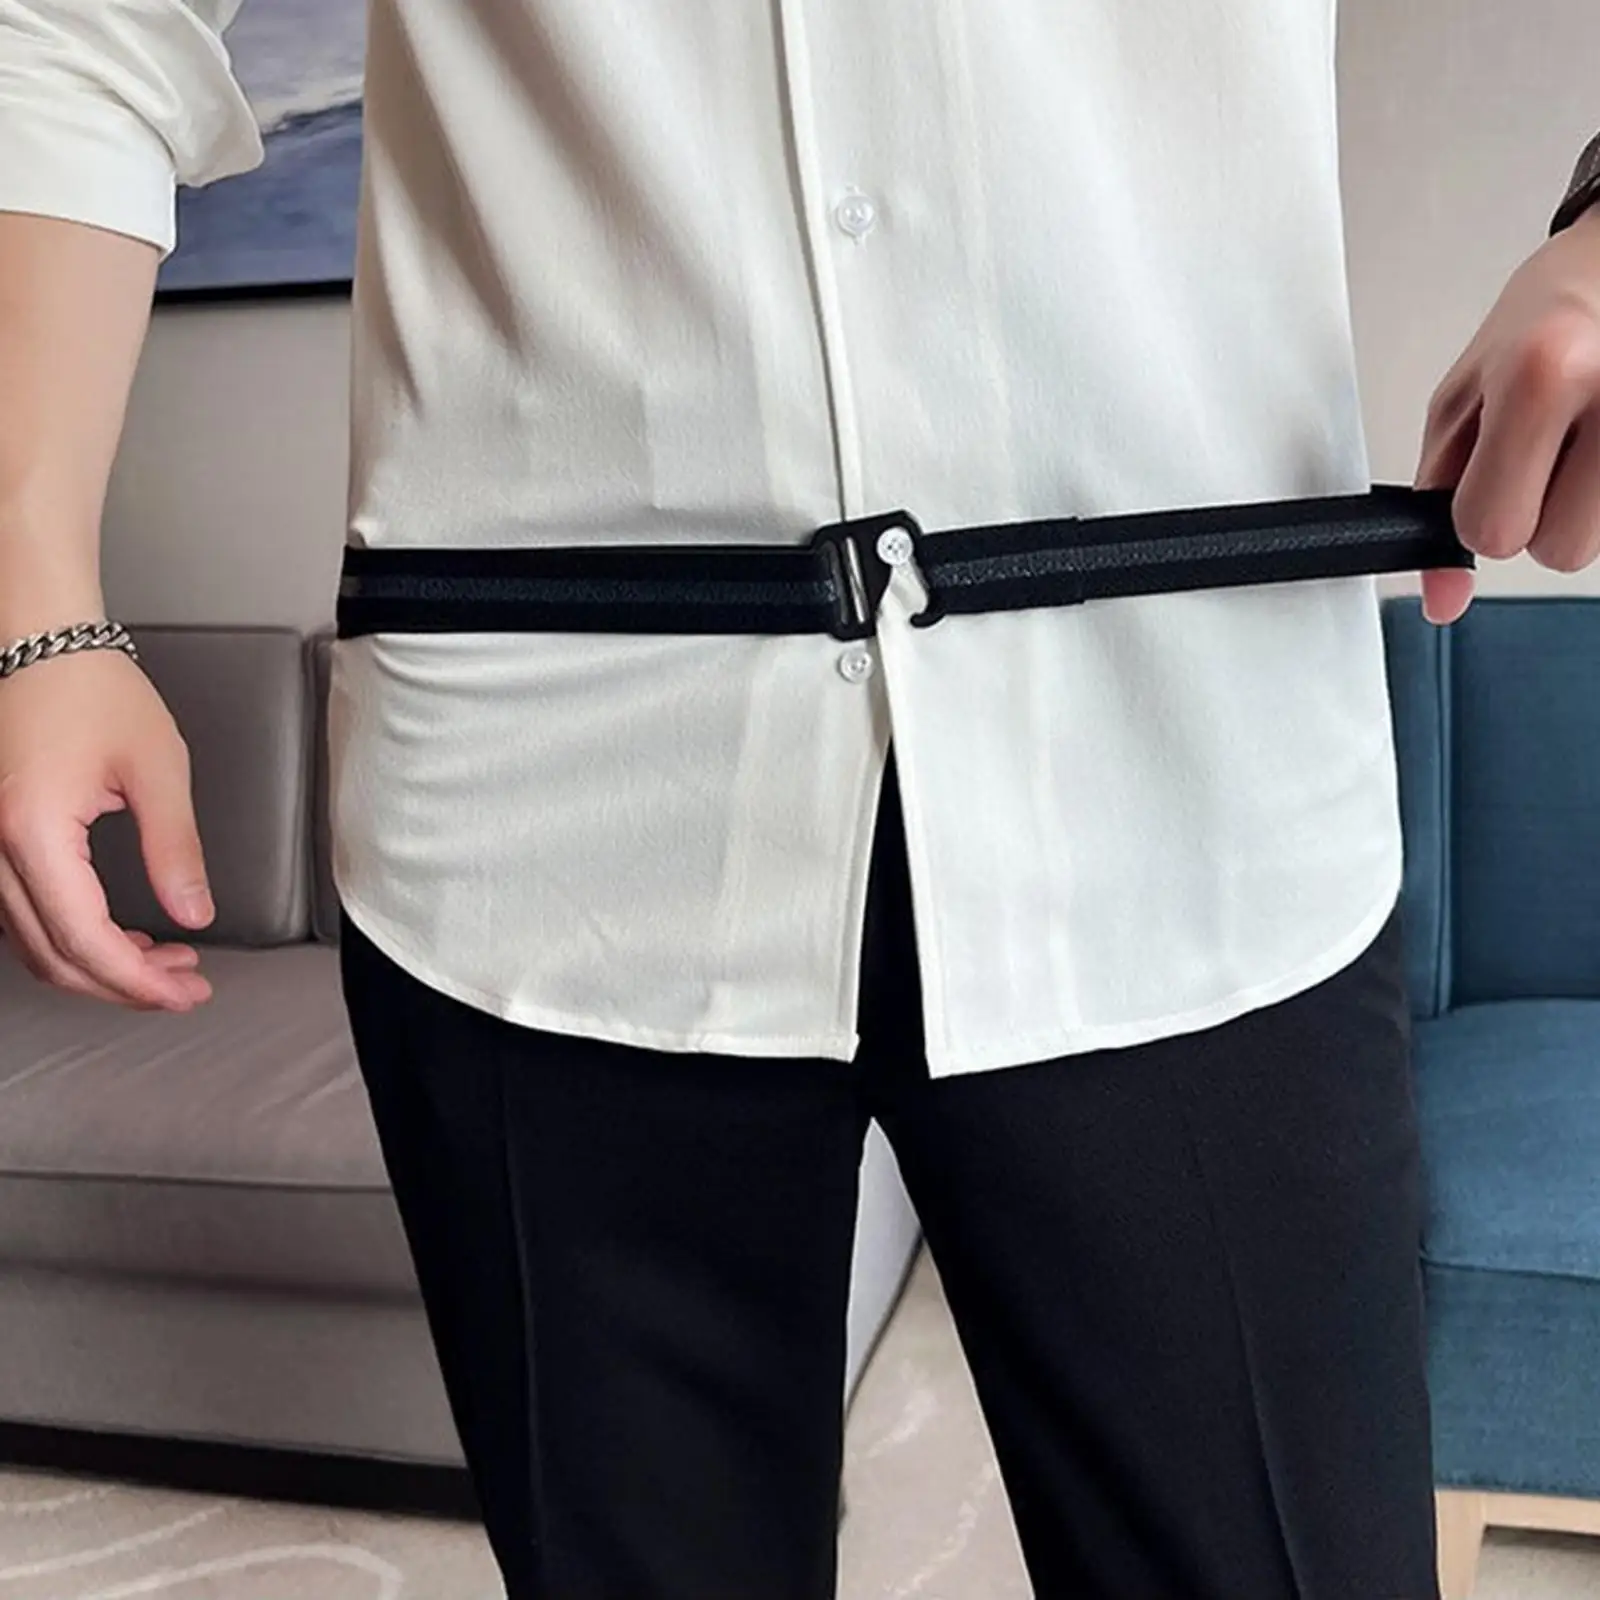 Shirt Stay Belt Sleeve Clip Adjustable Underwear Waistband Lock Belt for  Dress Shirt Keeping Shirt Tucked Men Women Uniform - AliExpress